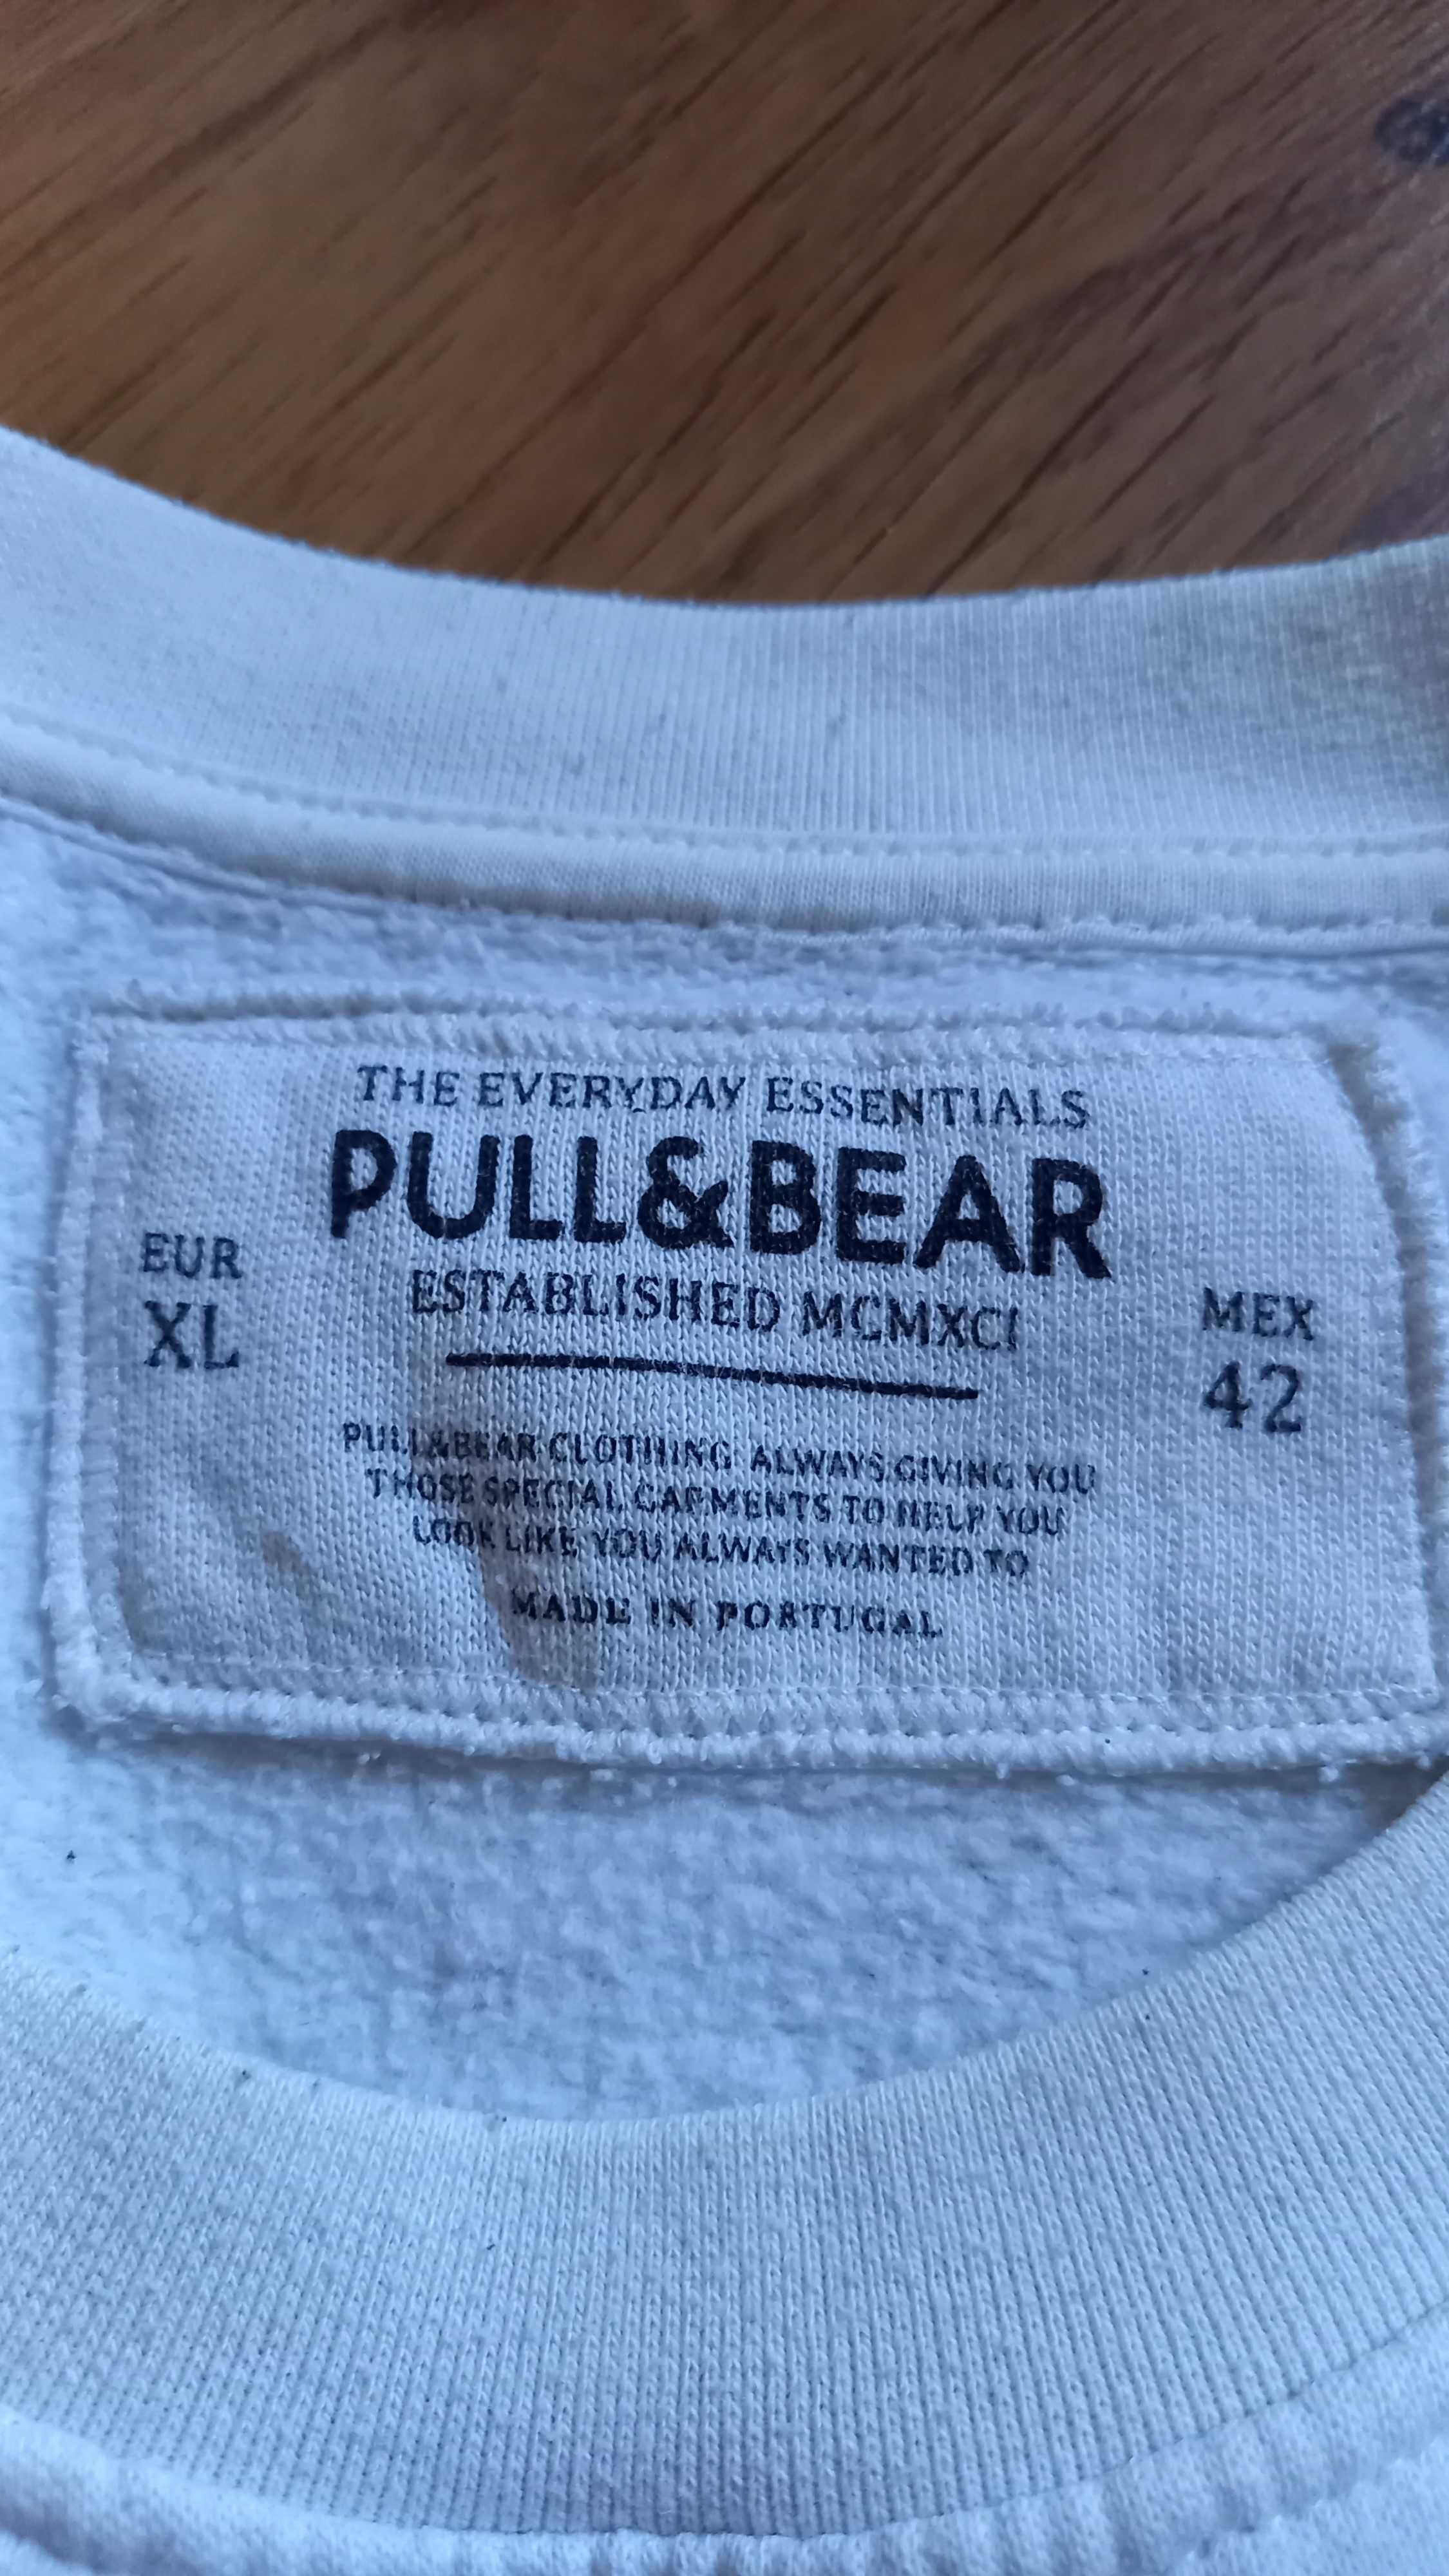 Bluza męska wielokolorowa marki PULL&BEAR